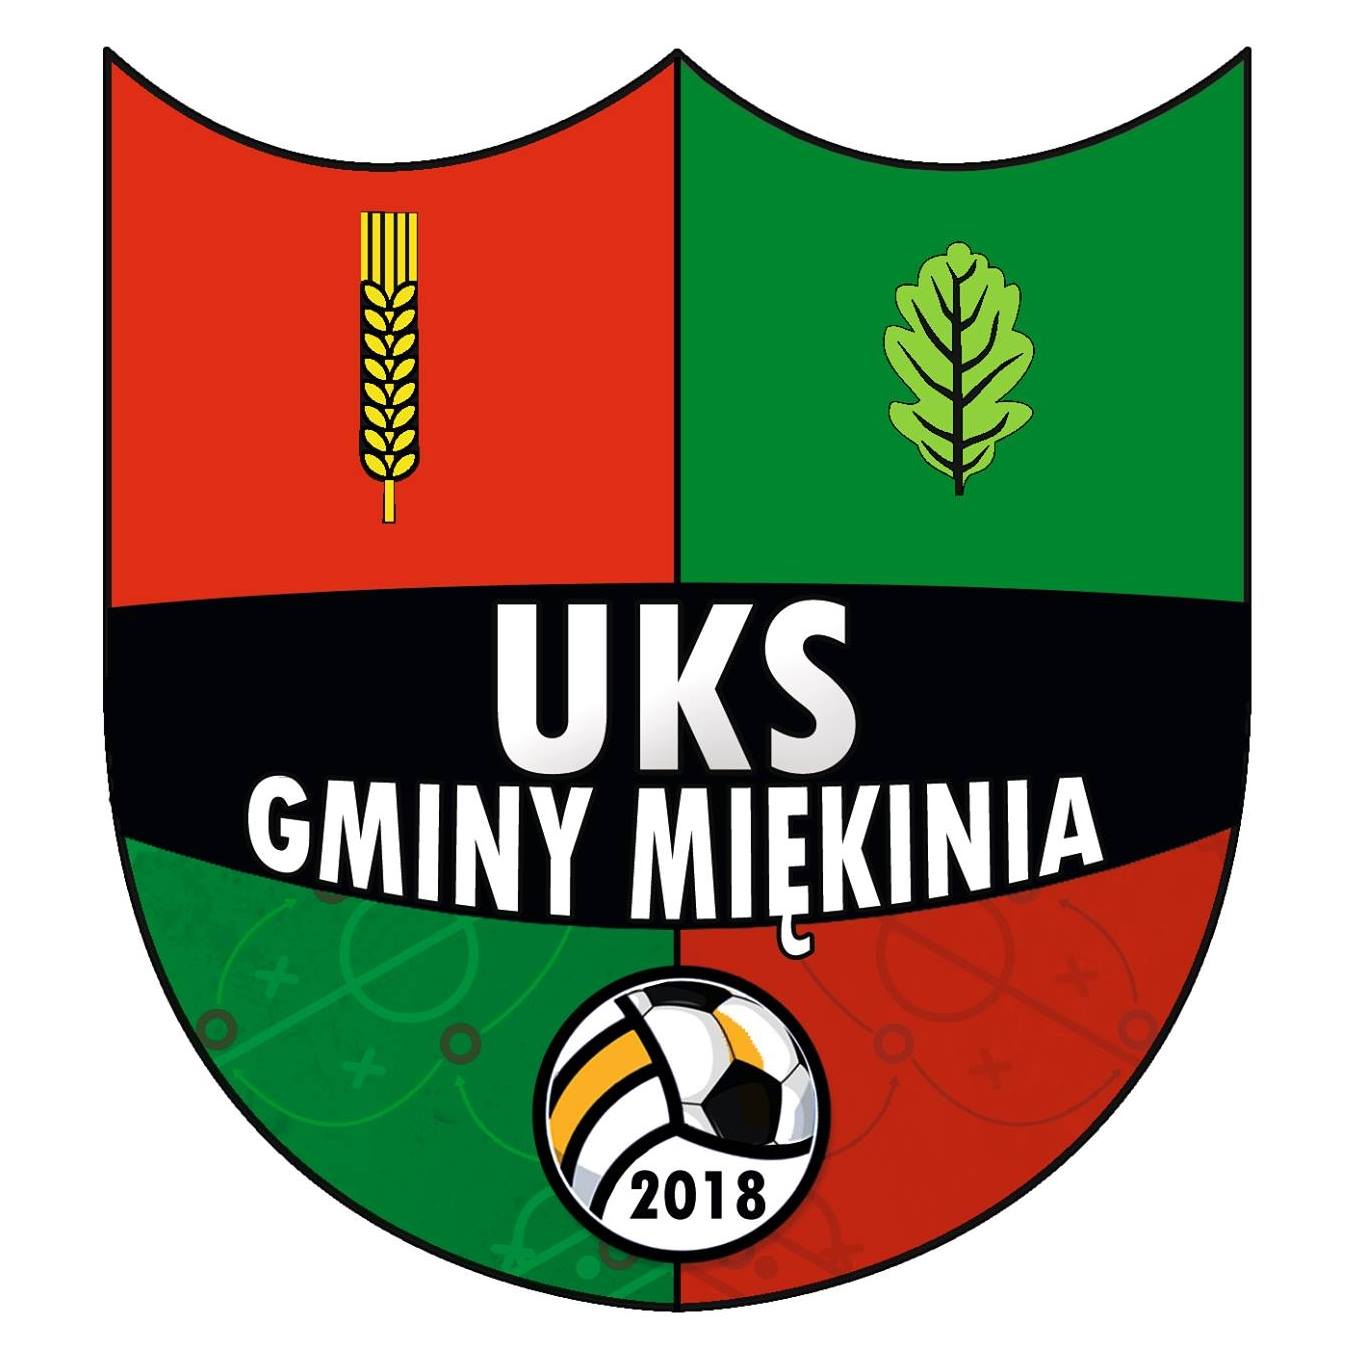 UKS Gminy Miękinia Logo